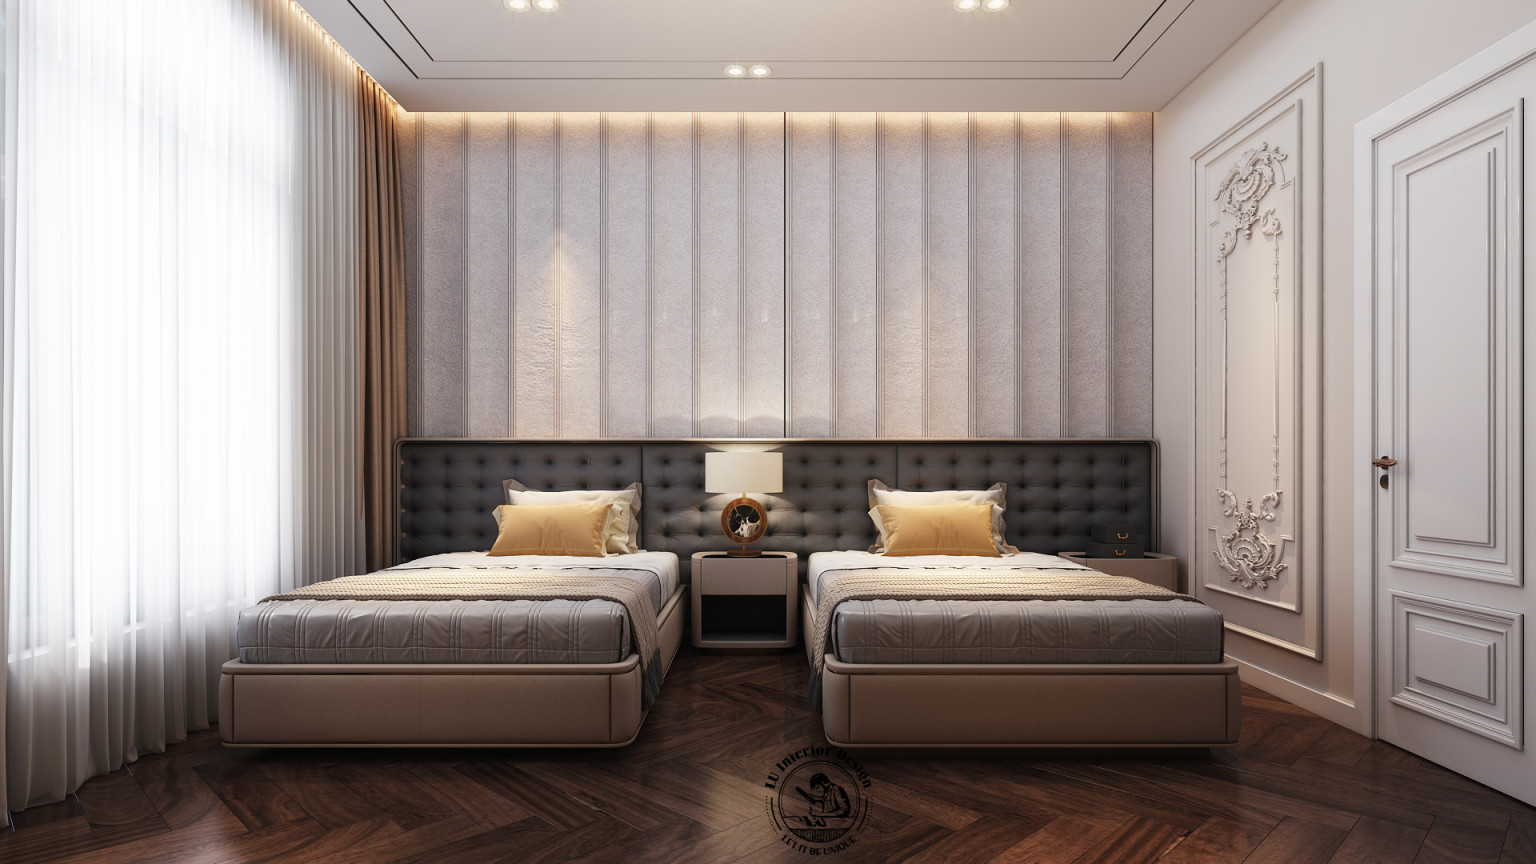 Sử dụng gam màu xám - trắng chủ đạo, kết hợp cùng đường nét tinh gọn của đồ nội thất trong phòng ngủ | Dự án Victoria Quận 2 - LU Design.